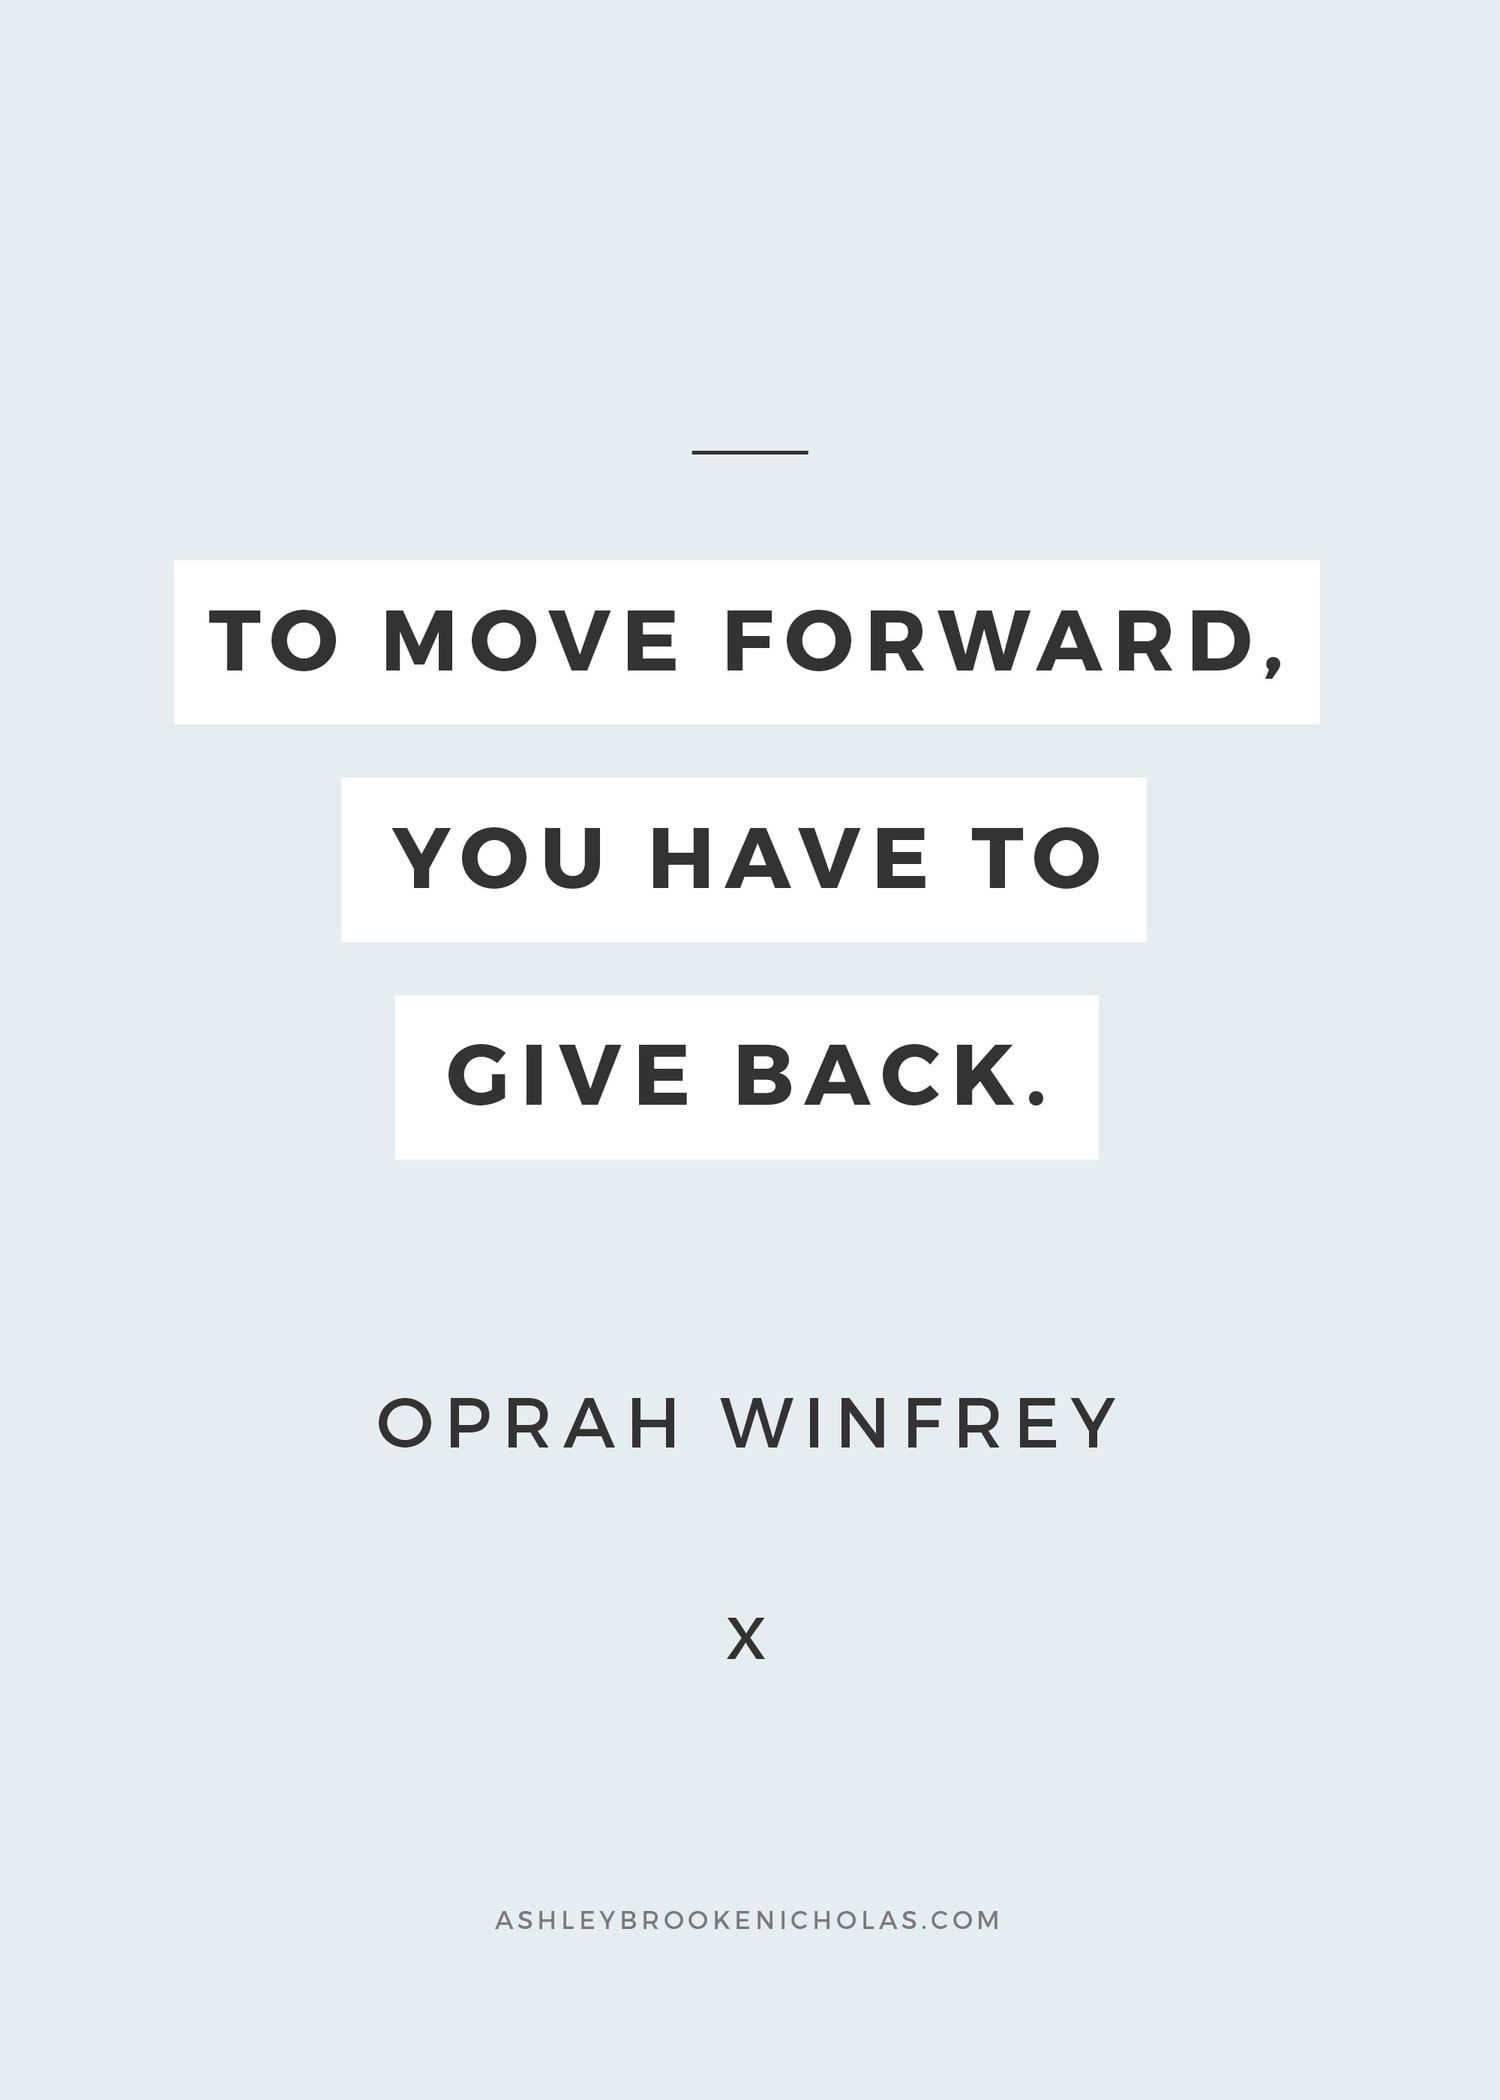 Oprah Winfrey - the Renaissance Woman